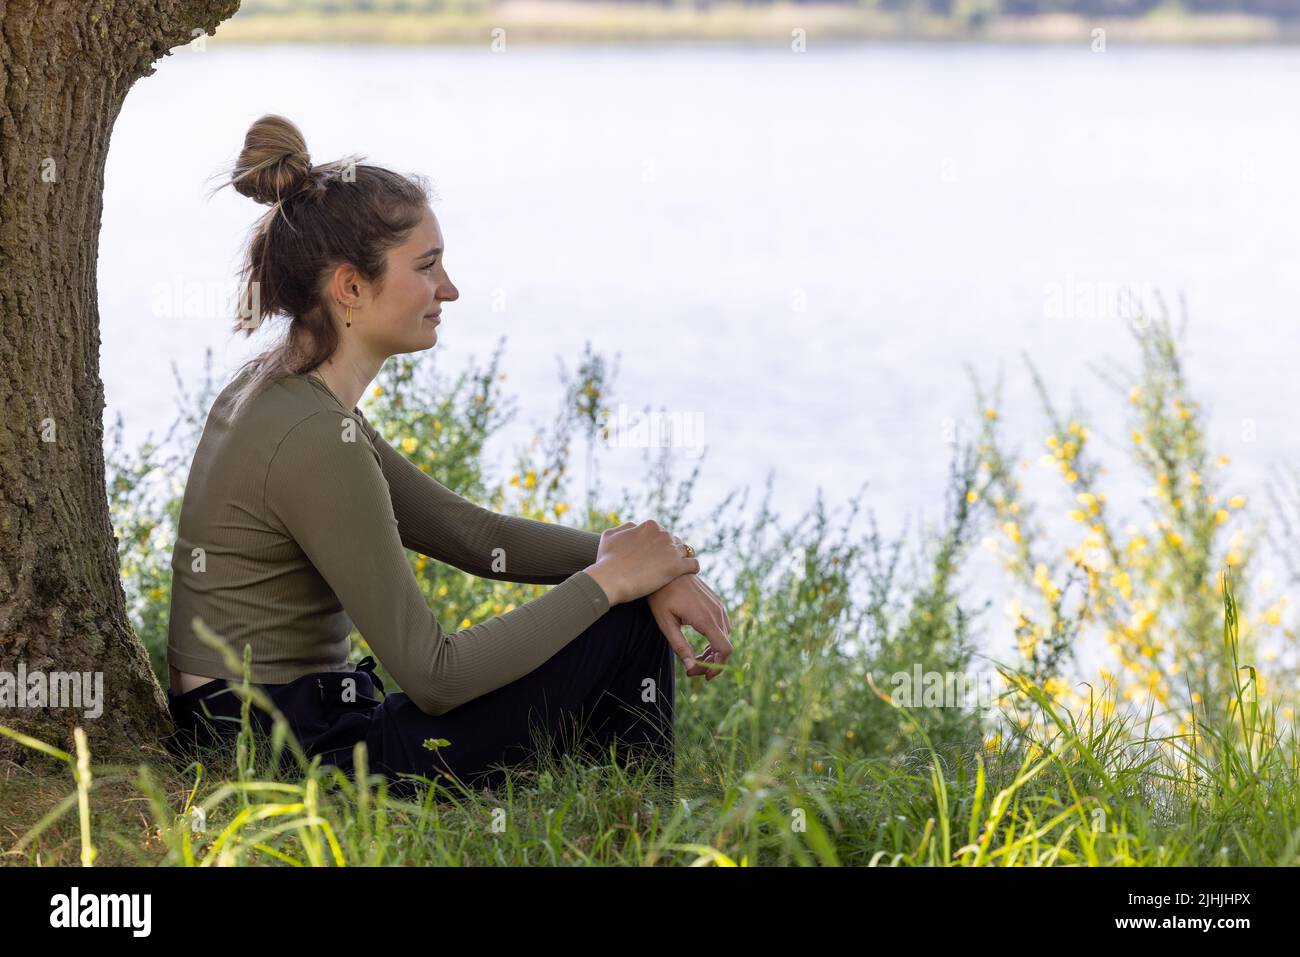 La jeune femme brune, assise dans une forêt verte, jouit du silence et de la beauté de la nature en regardant au-dessus d'un lac de la forêt bleue par une journée d'été. Photo de haute qualité Banque D'Images